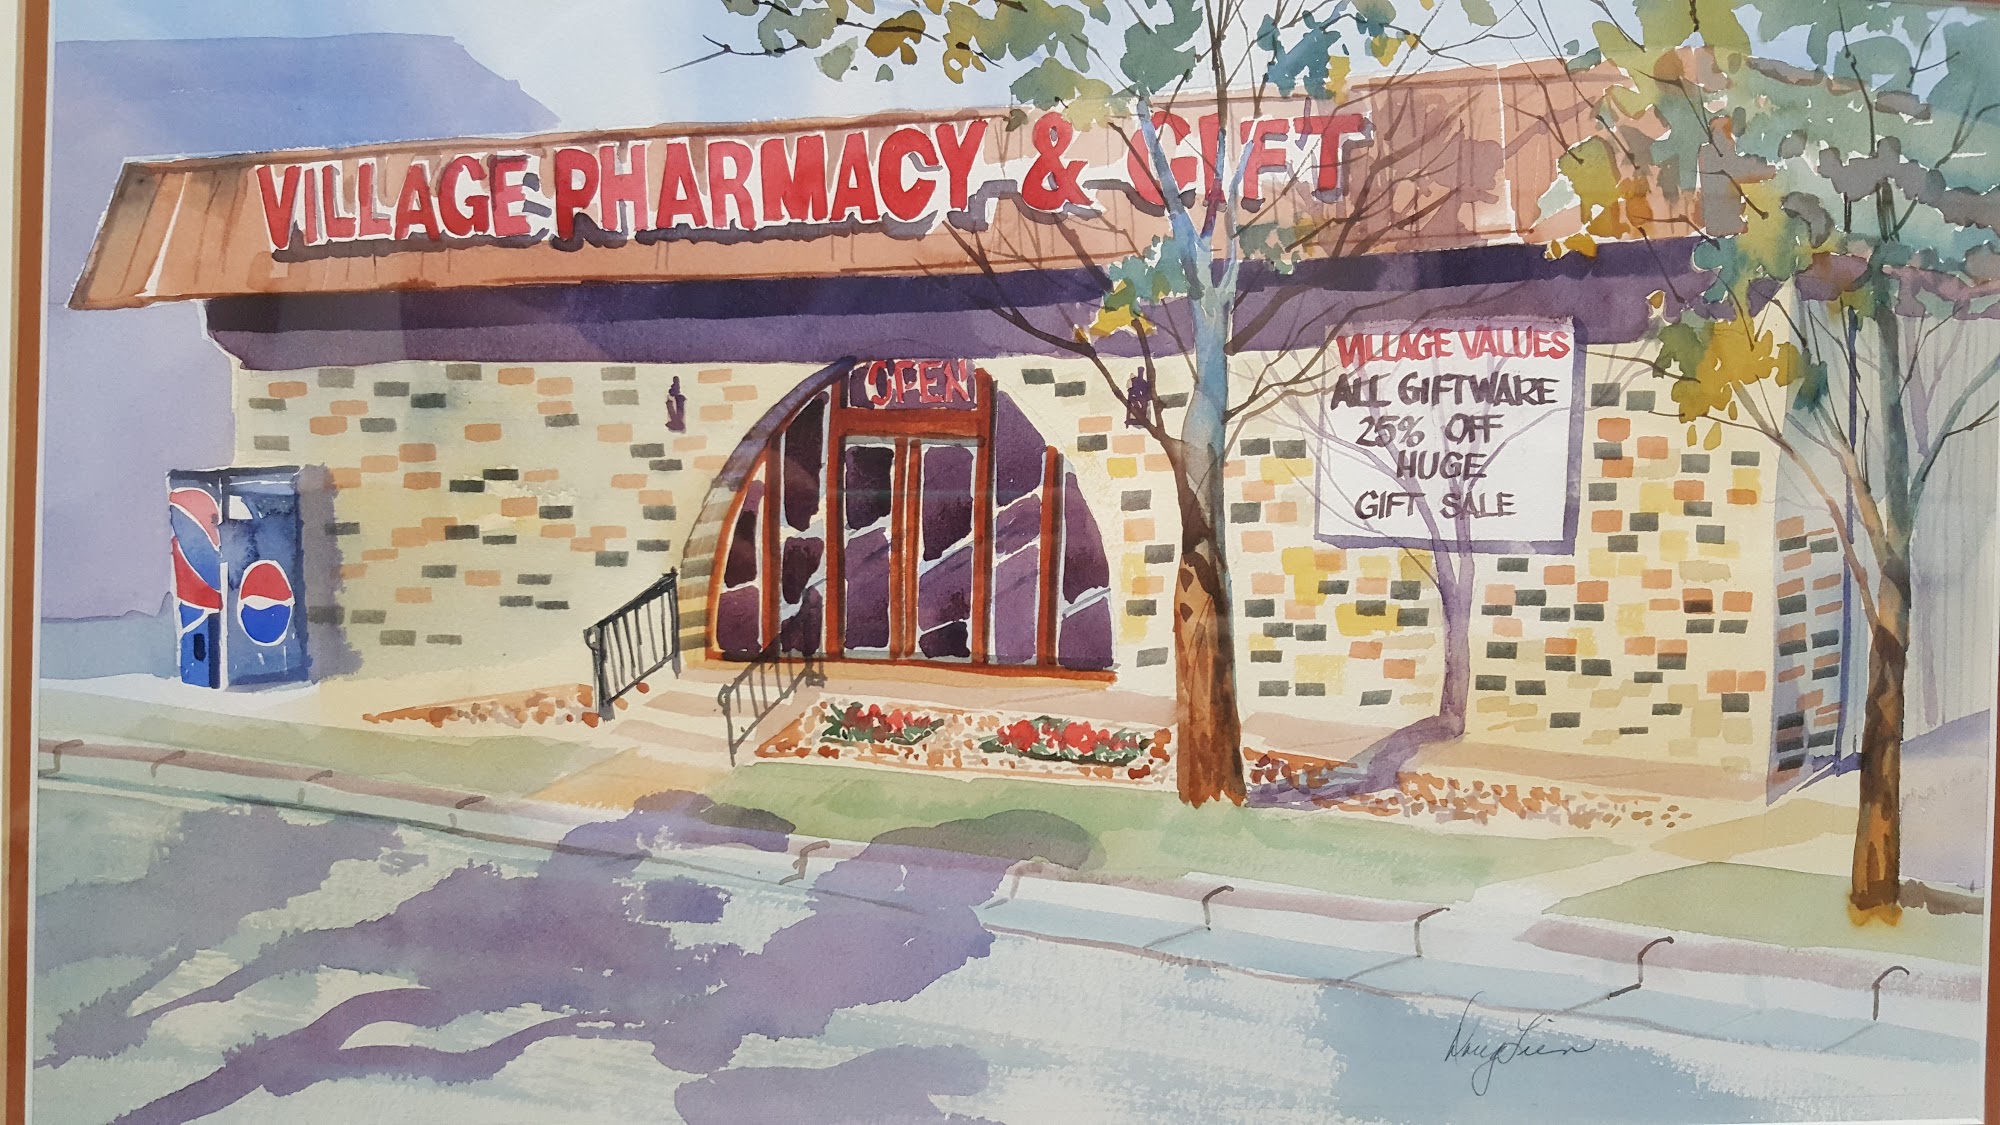 Village Pharmacy & Gift